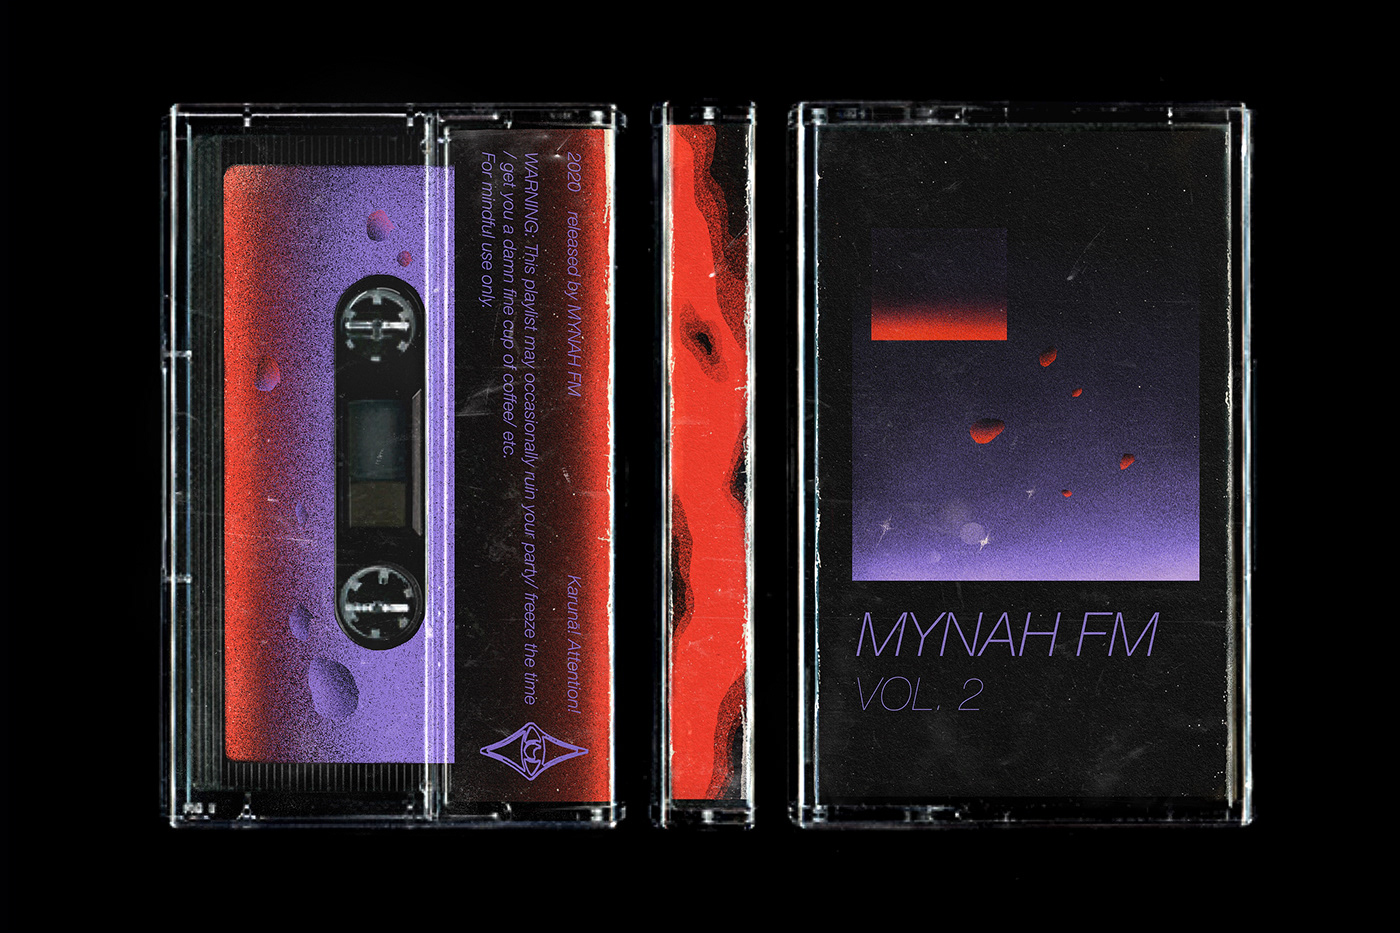 mynah fm playlist Cover Art album cover soundcloud audio cassette